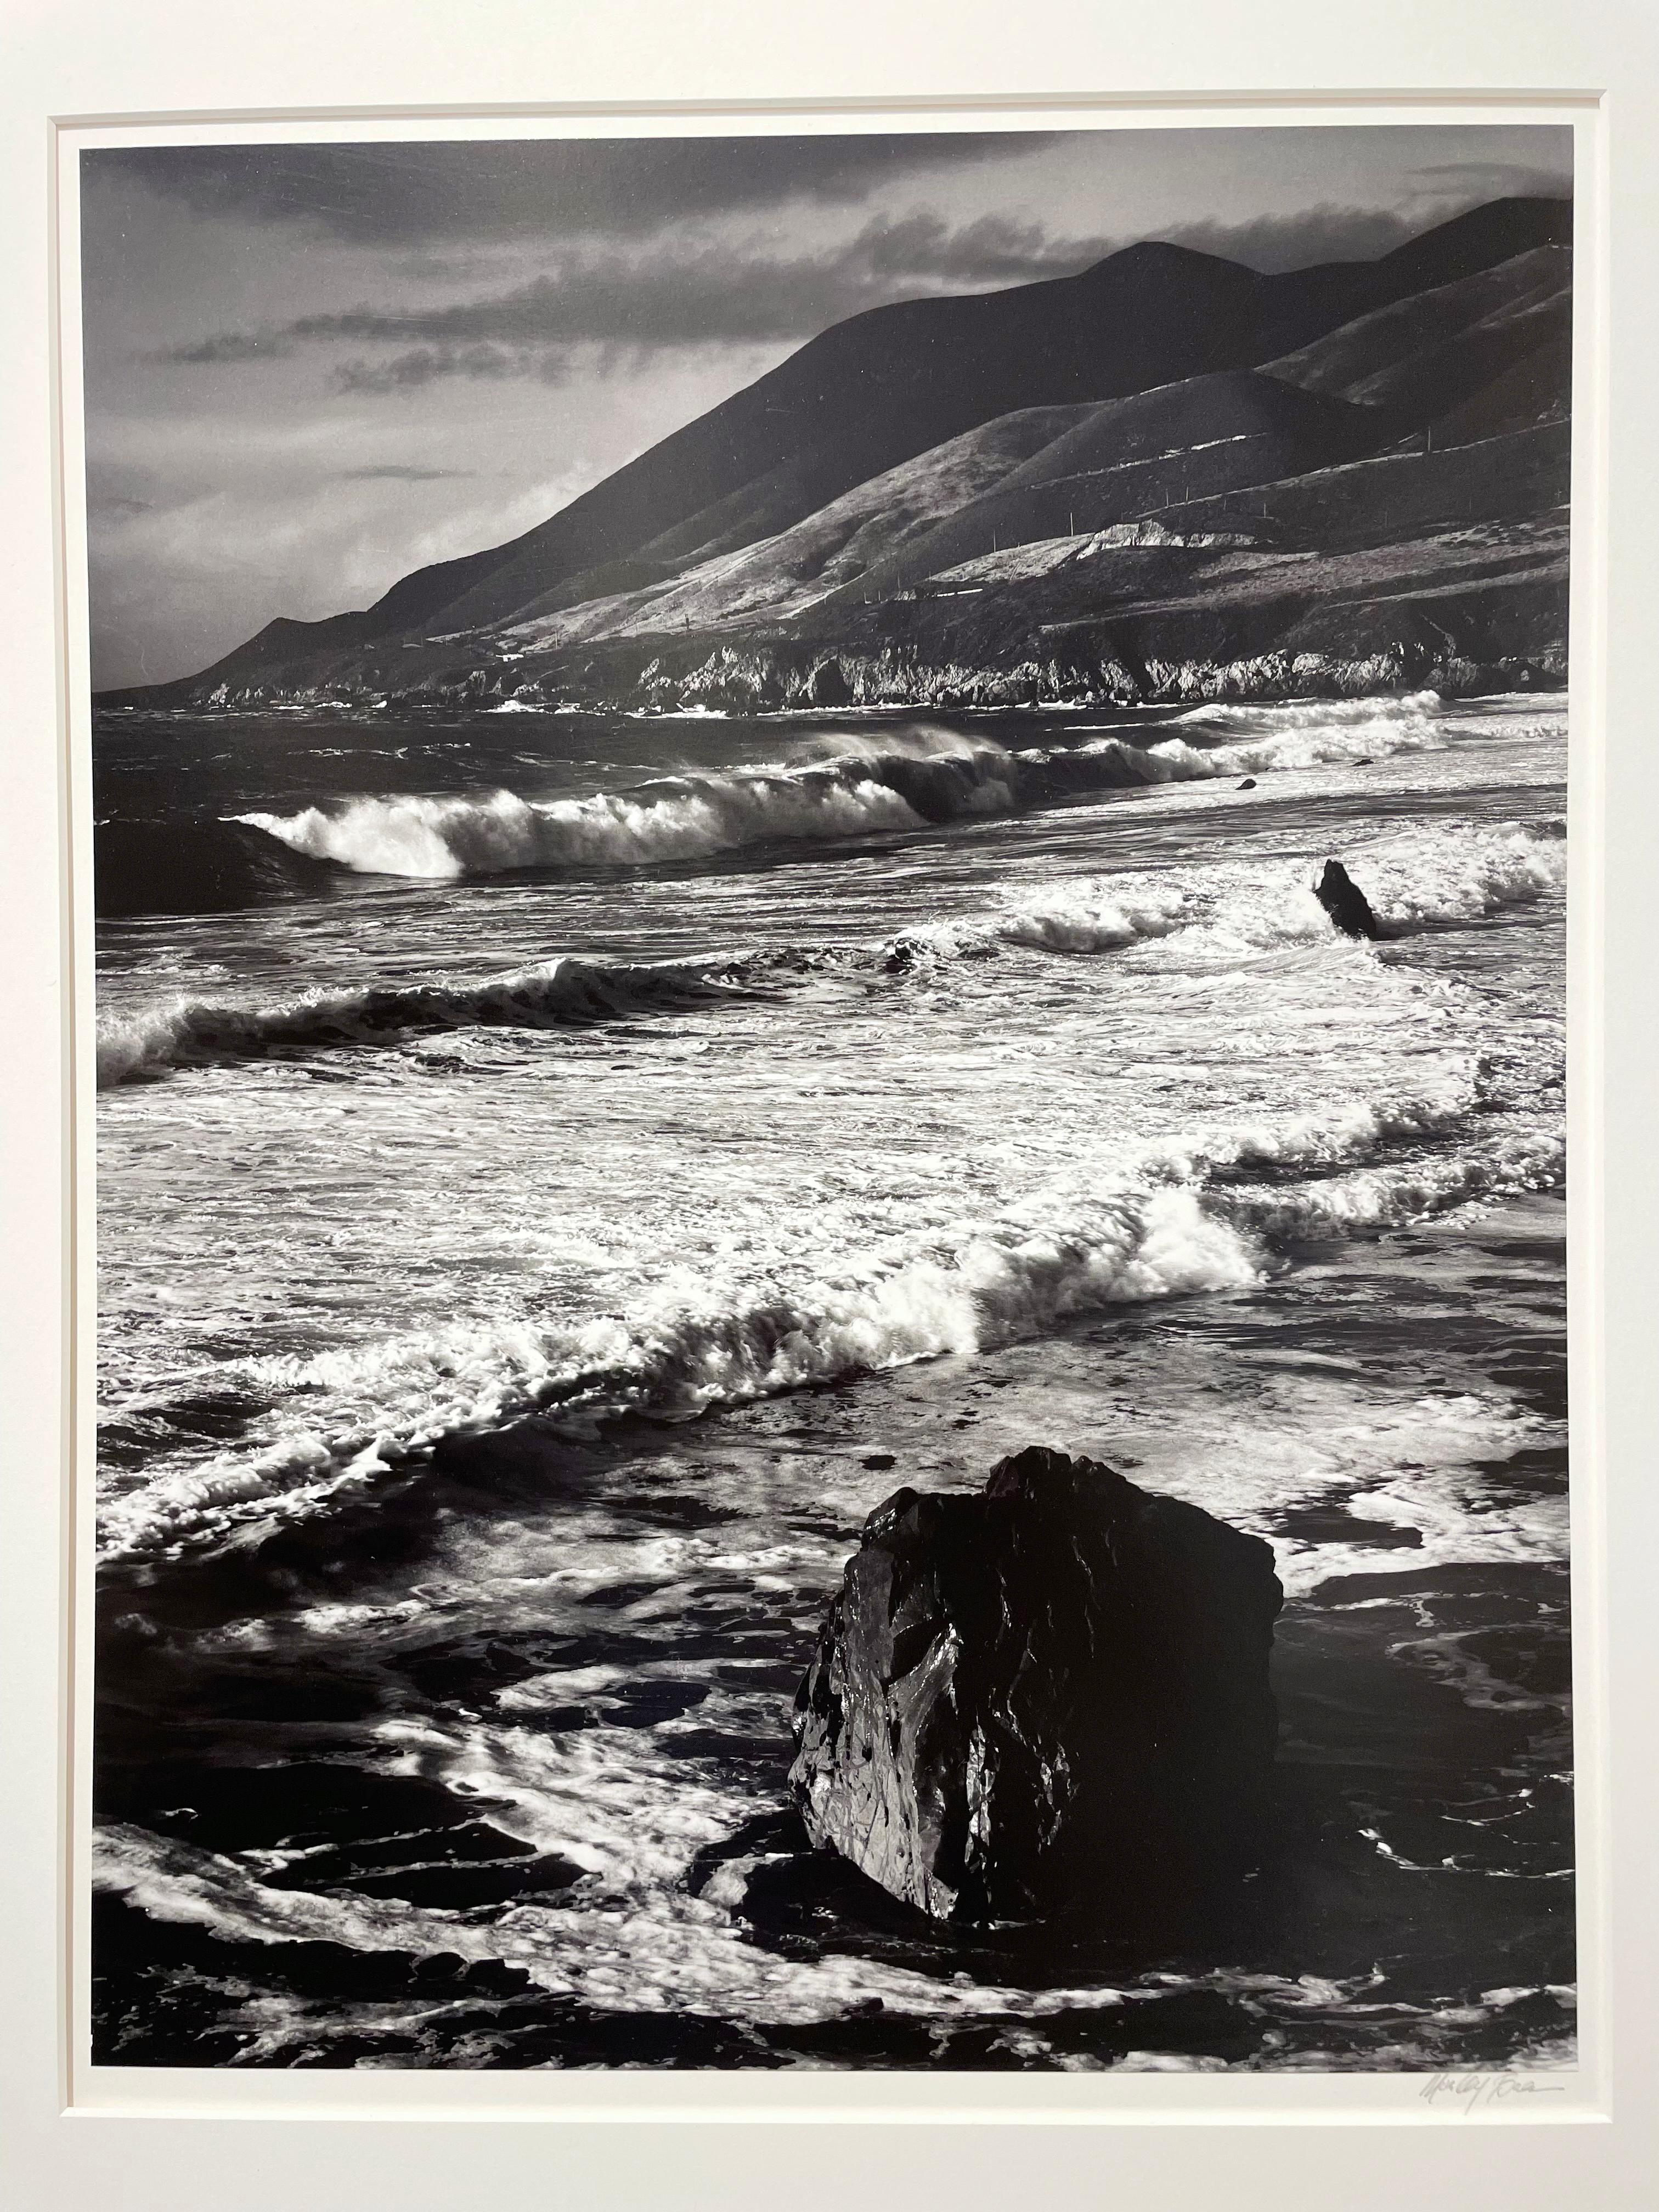 Winter-Wintersport, Garrapata, Sur Coast, 1966 (Schwarz), Landscape Photograph, von Morley Baer